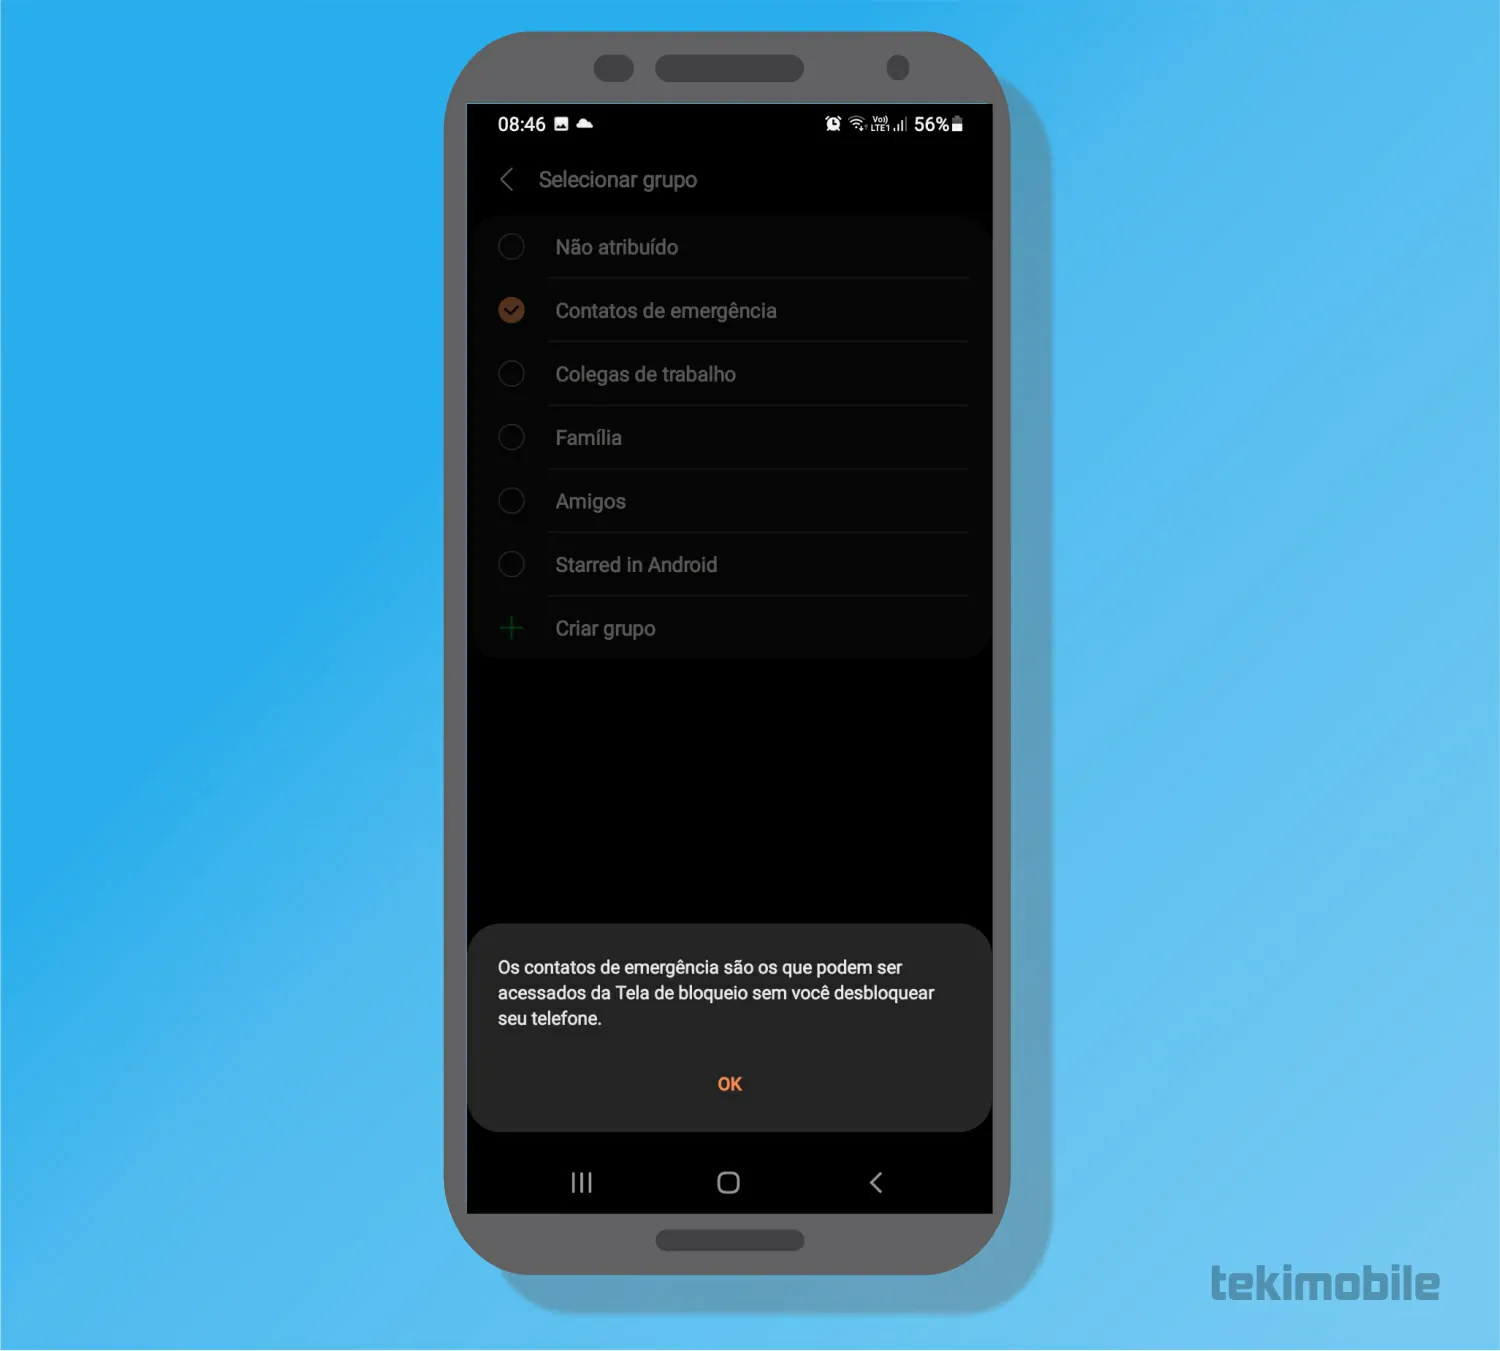 Selecione contatos de emergencia e confirme - Como adicionar contatos de emergência no Android